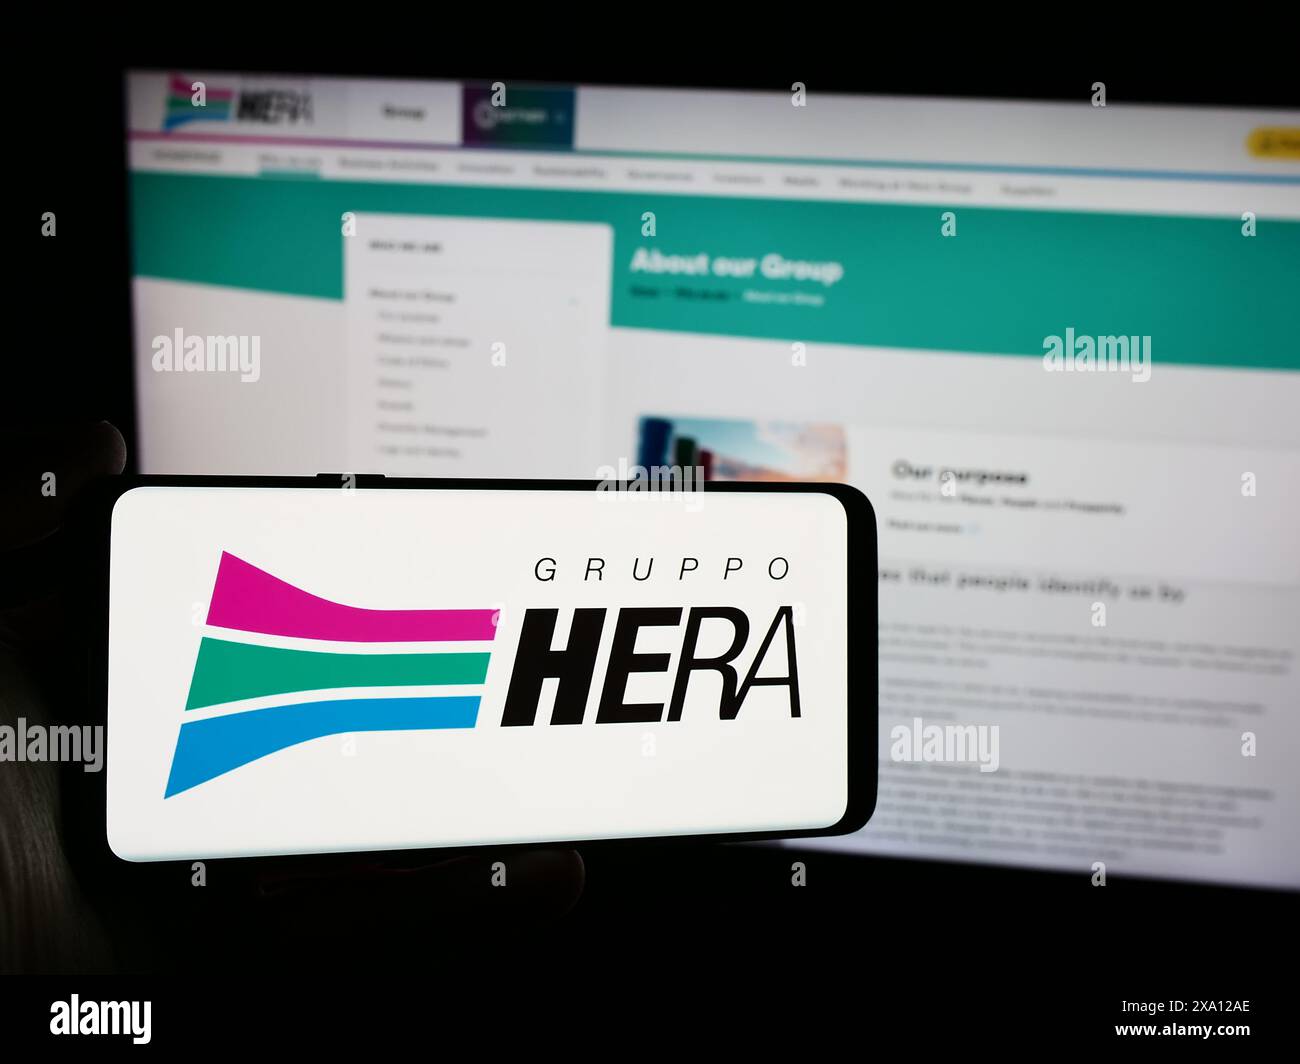 Persona che possiede uno smartphone con il logo della società italiana Hera S.p.A. davanti al sito web. Mettere a fuoco il display del telefono. Foto Stock